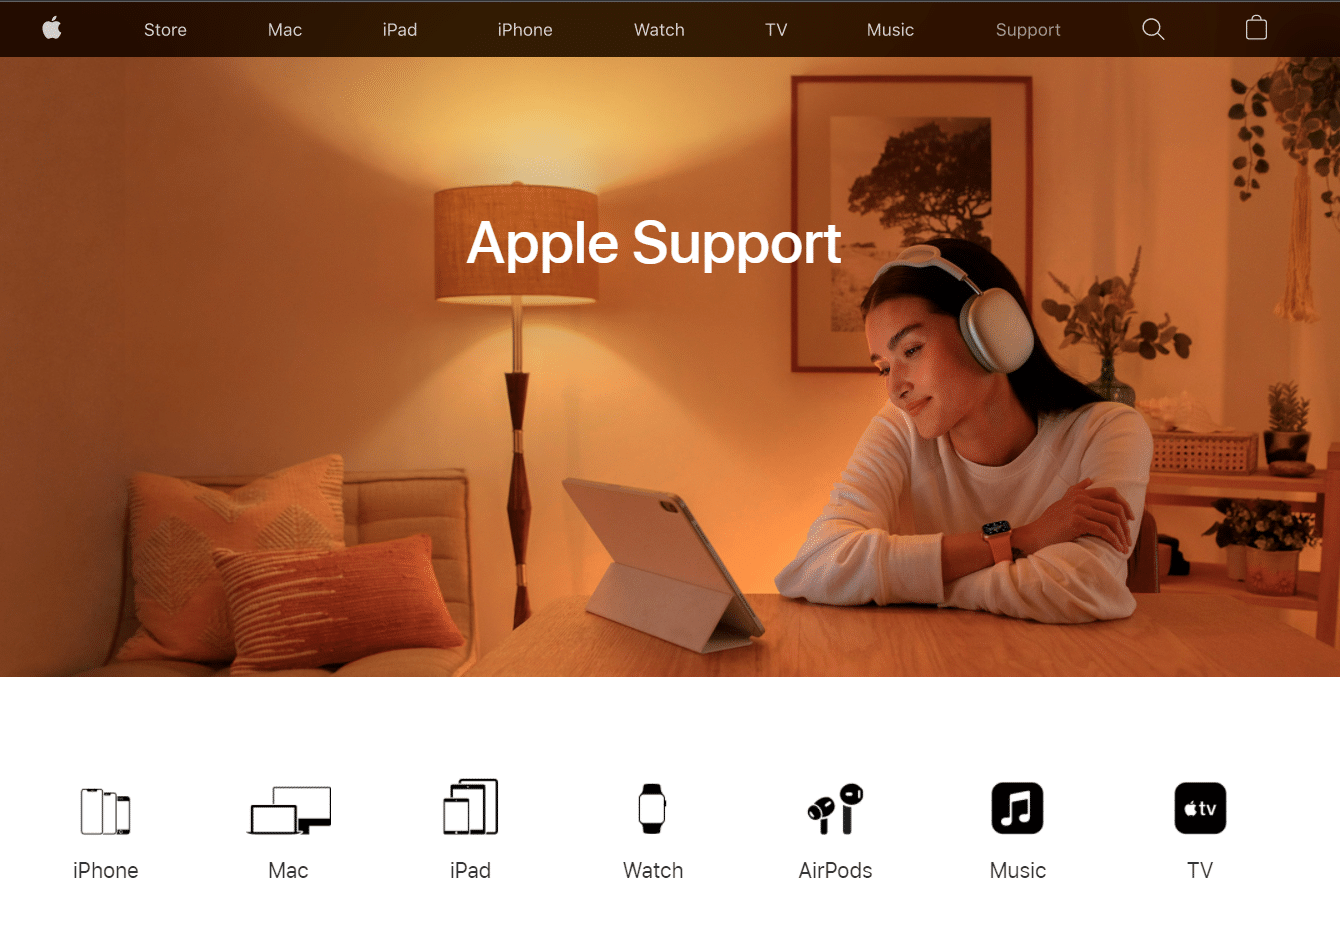 Pagina web de asistență Apple